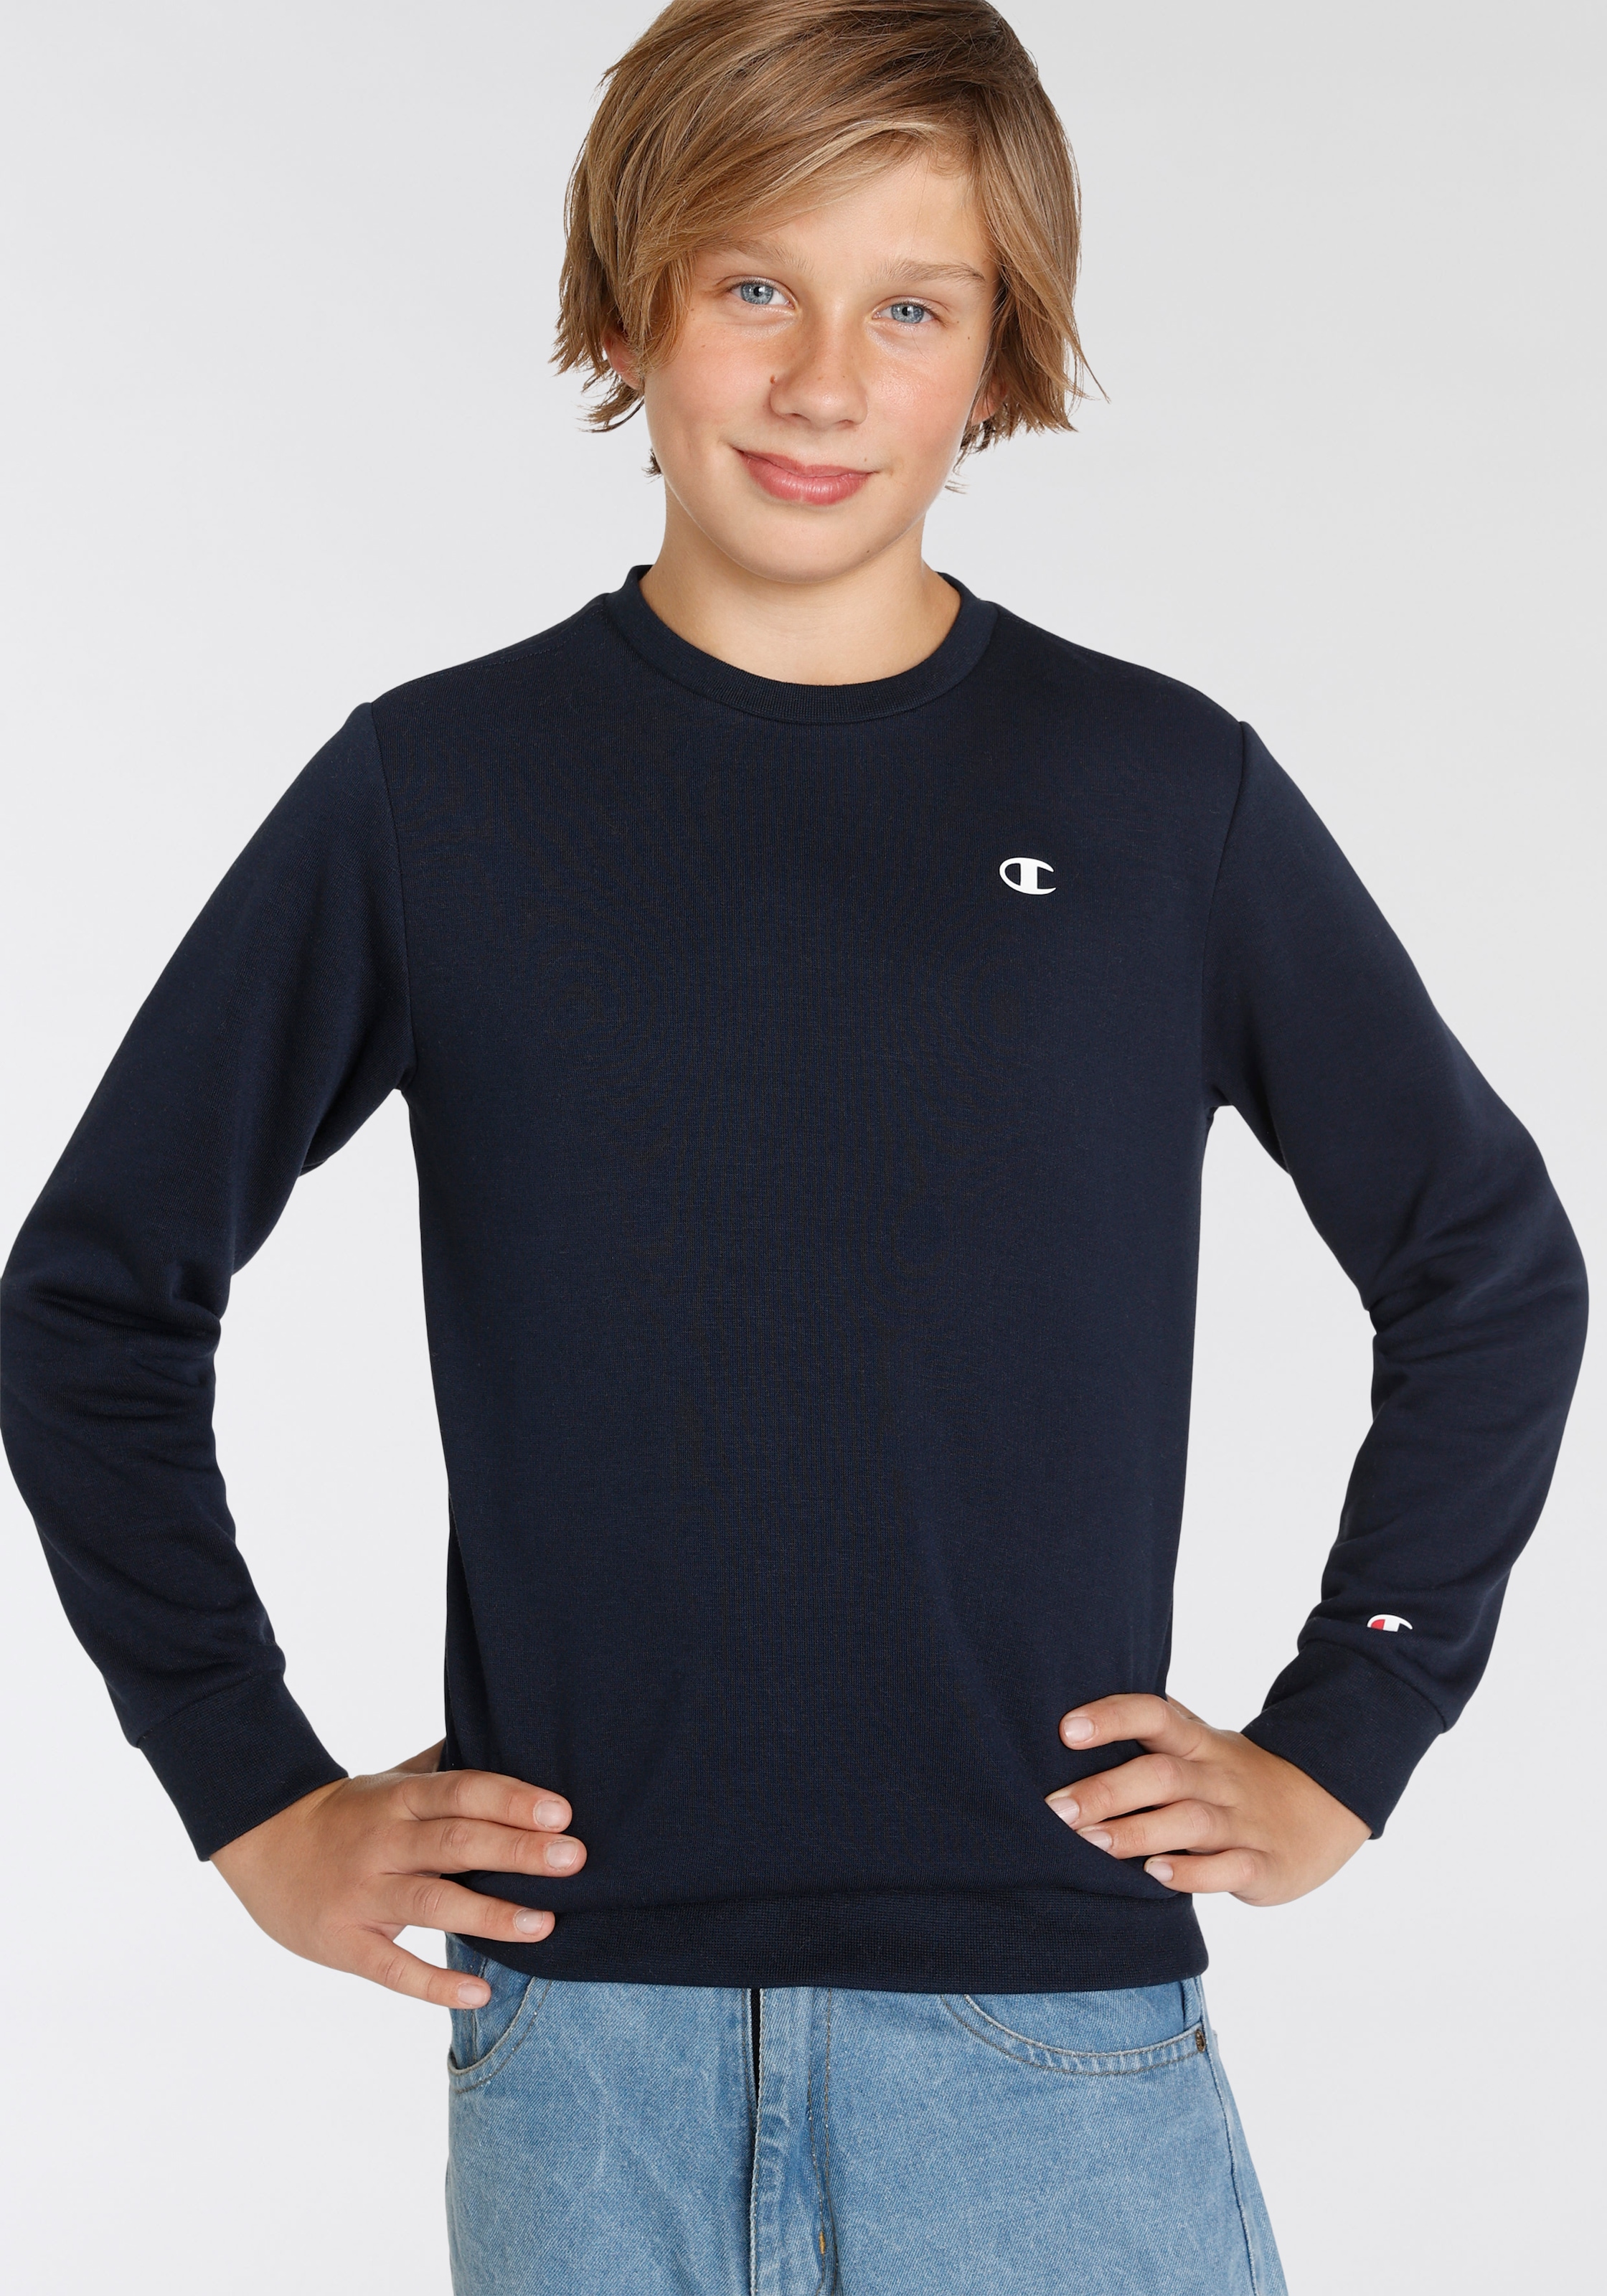 Trendige Champion Sweatshirt »Basic - Sweatshirt Kinder« ohne Crewneck Mindestbestellwert kaufen für